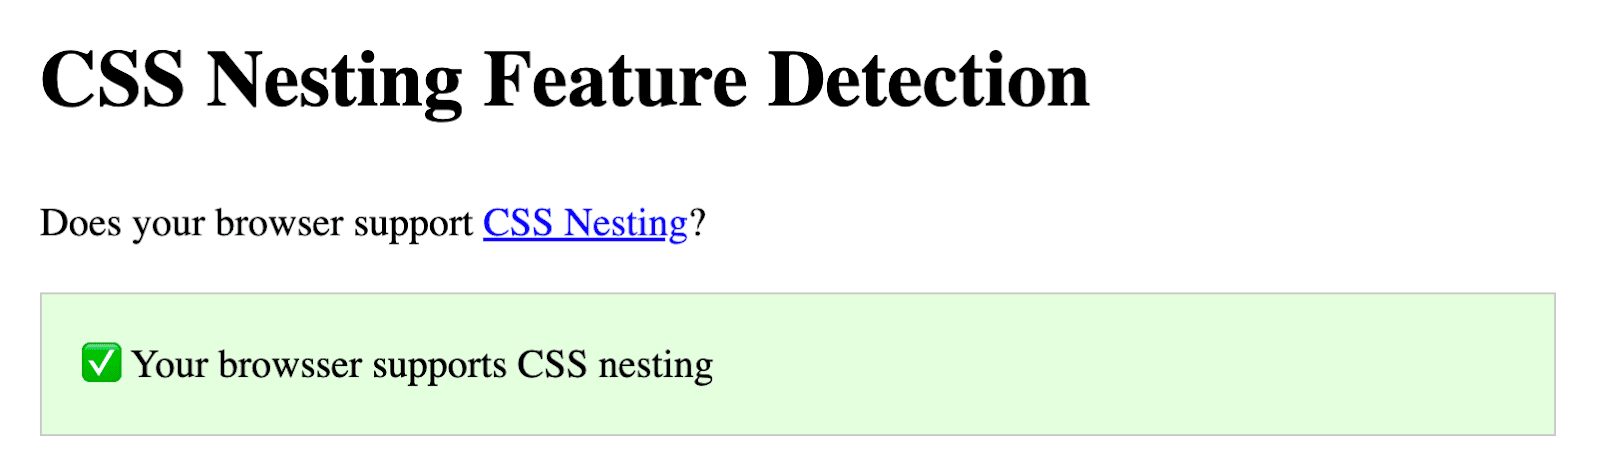 Captura de pantalla de la demostración de Codepen de Bramus en la que se pregunta si tu navegador admite el anidamiento de CSS. Debajo de esa pregunta, aparece un recuadro verde que indica apoyo.